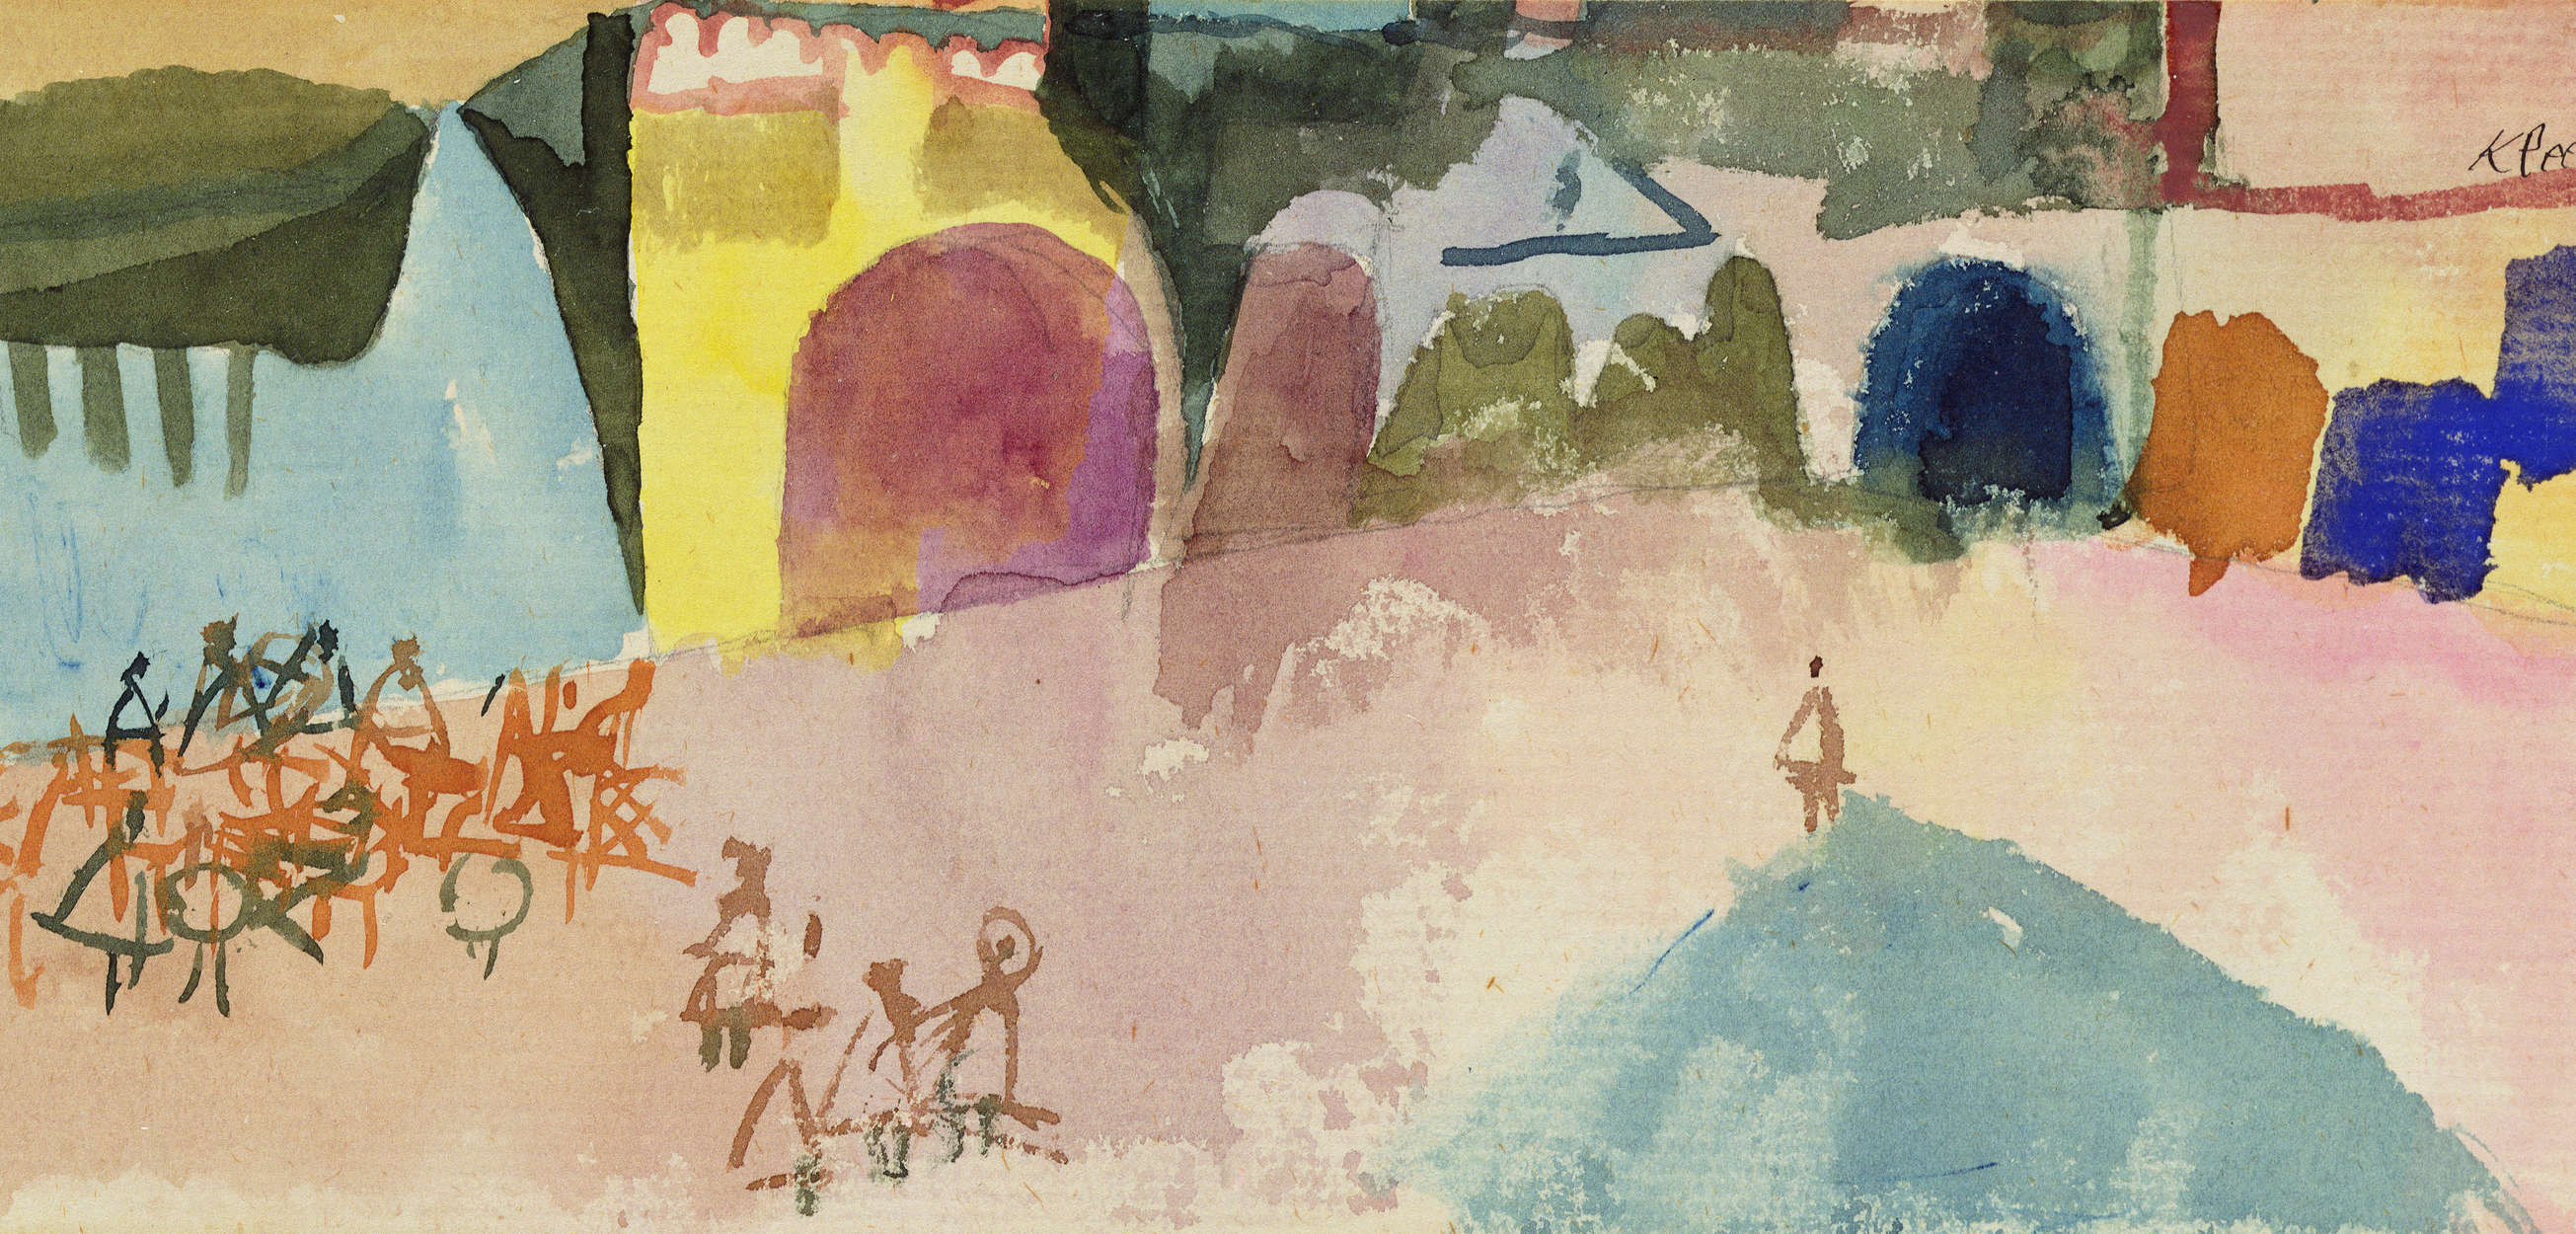             Papier peint panoramique "Café de rue à Tunis" de Paul Klee
        